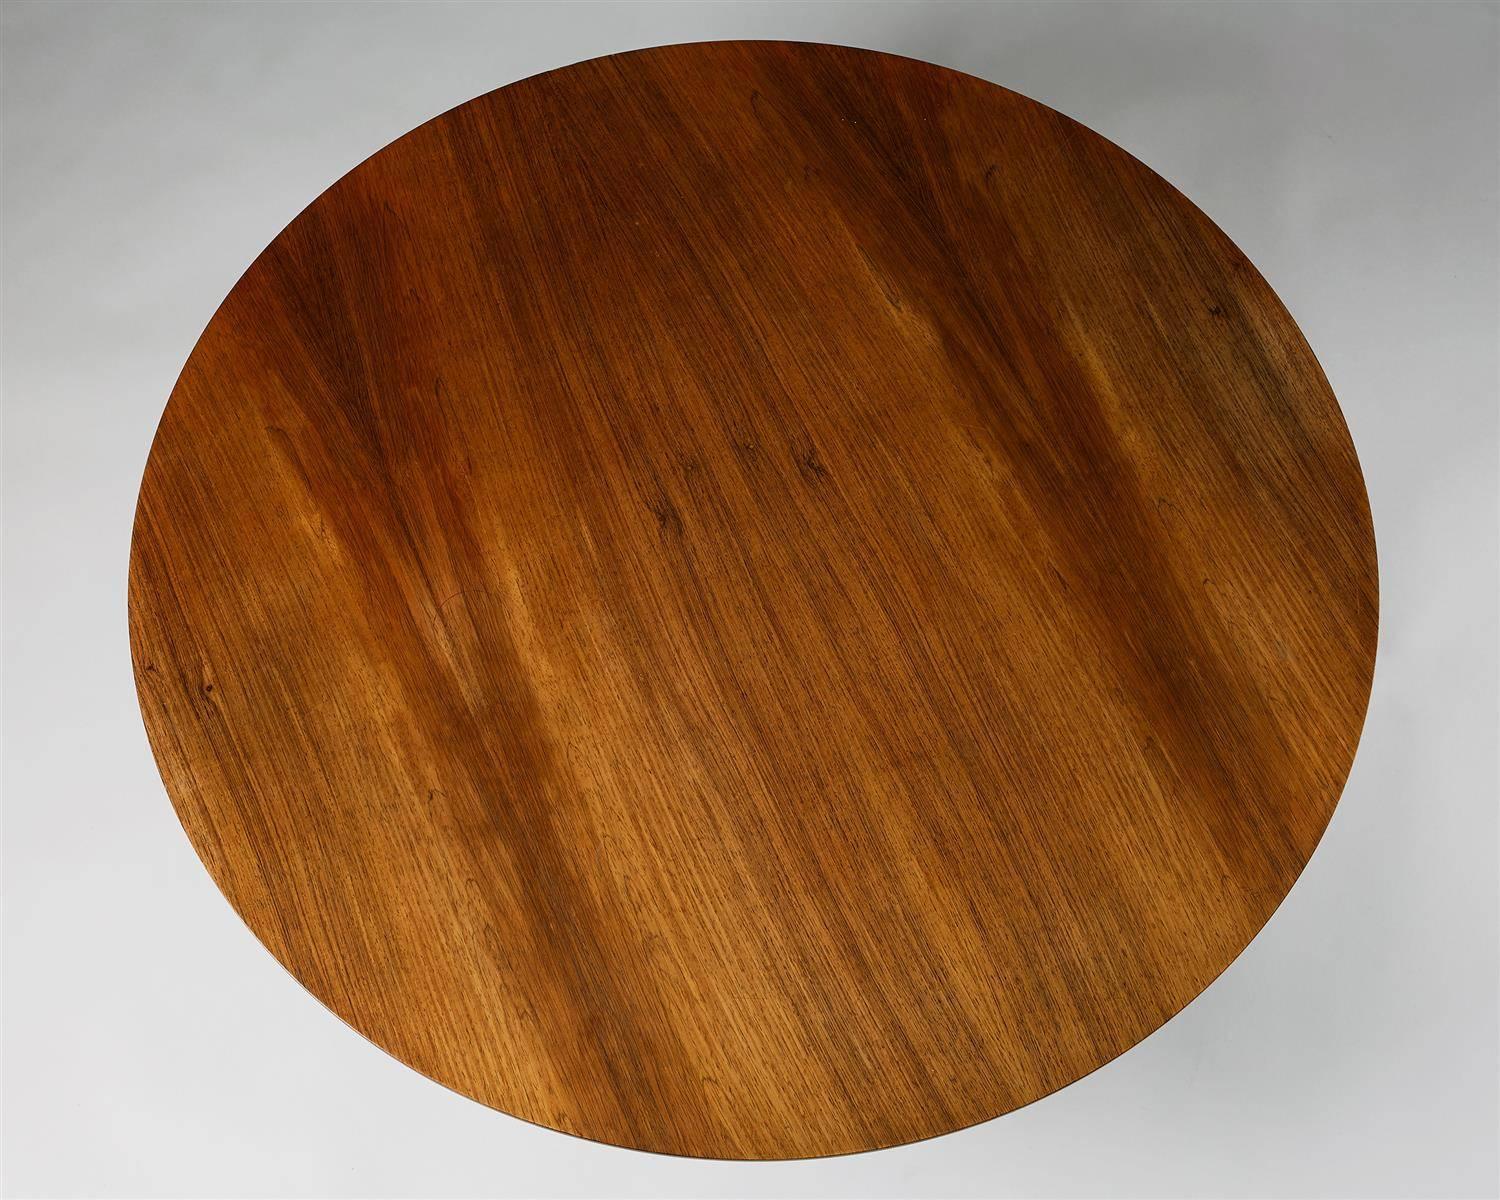 Scandinavian Modern Occasional Table Designed by Arne Jacobsen for Fritz Hansen, Denmark. 1960s